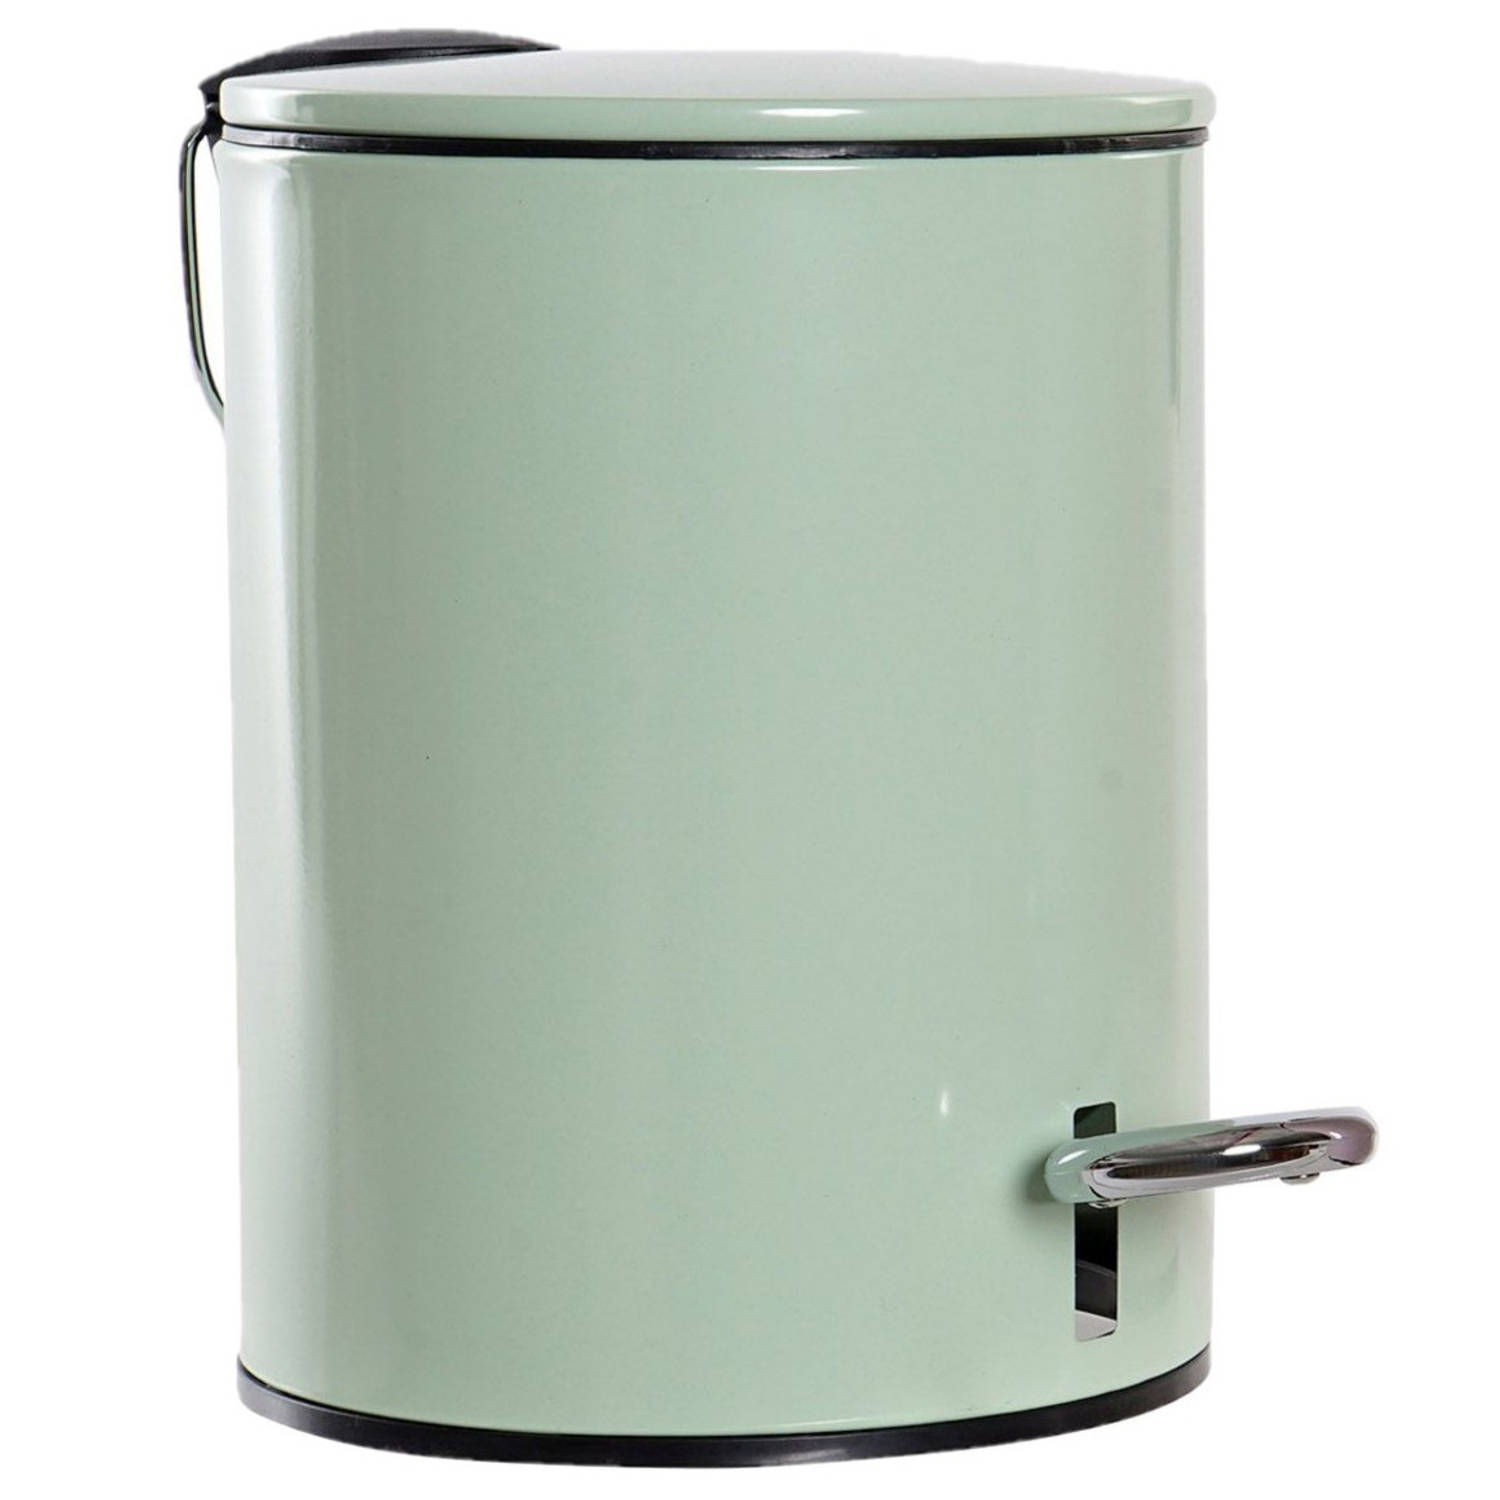 groen 3 liter 23 cm - Prullenbakken | Blokker